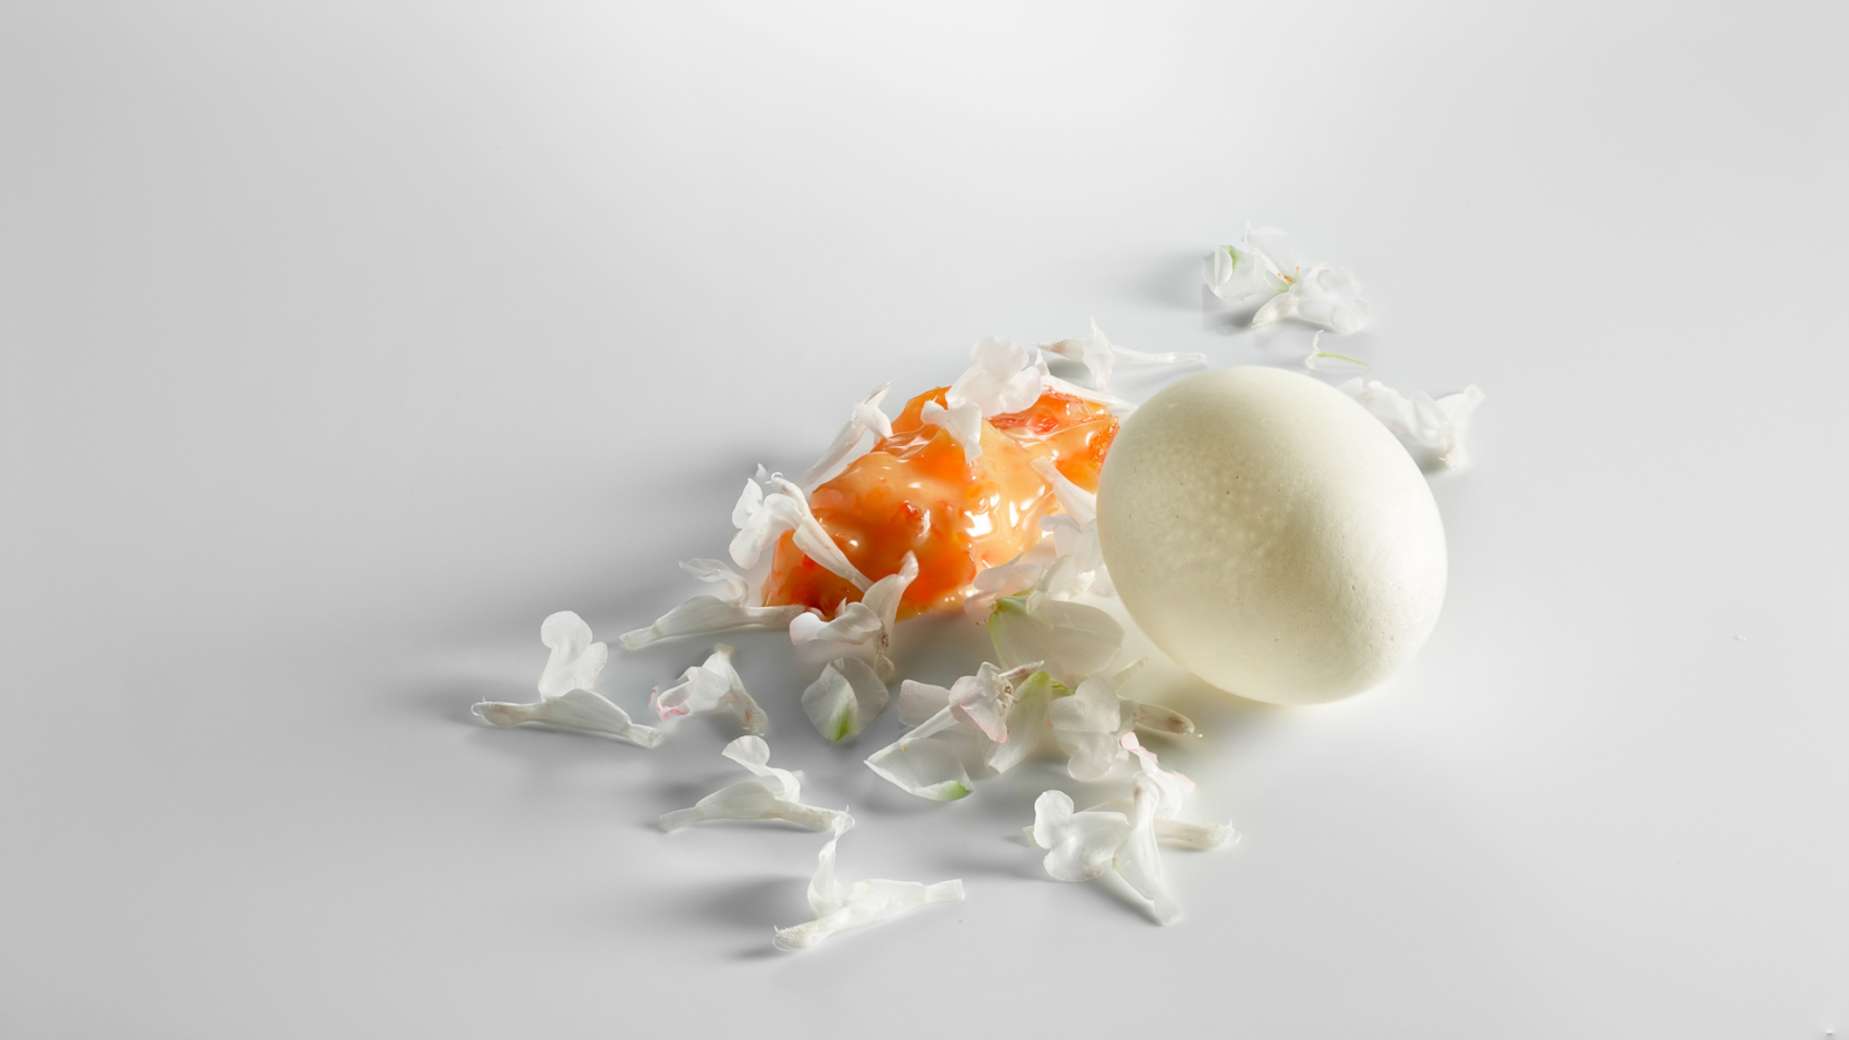 El huevo roto, la yema helada y las flores blancas.
Foto: José Luis López de Zubiria / Mugaritz